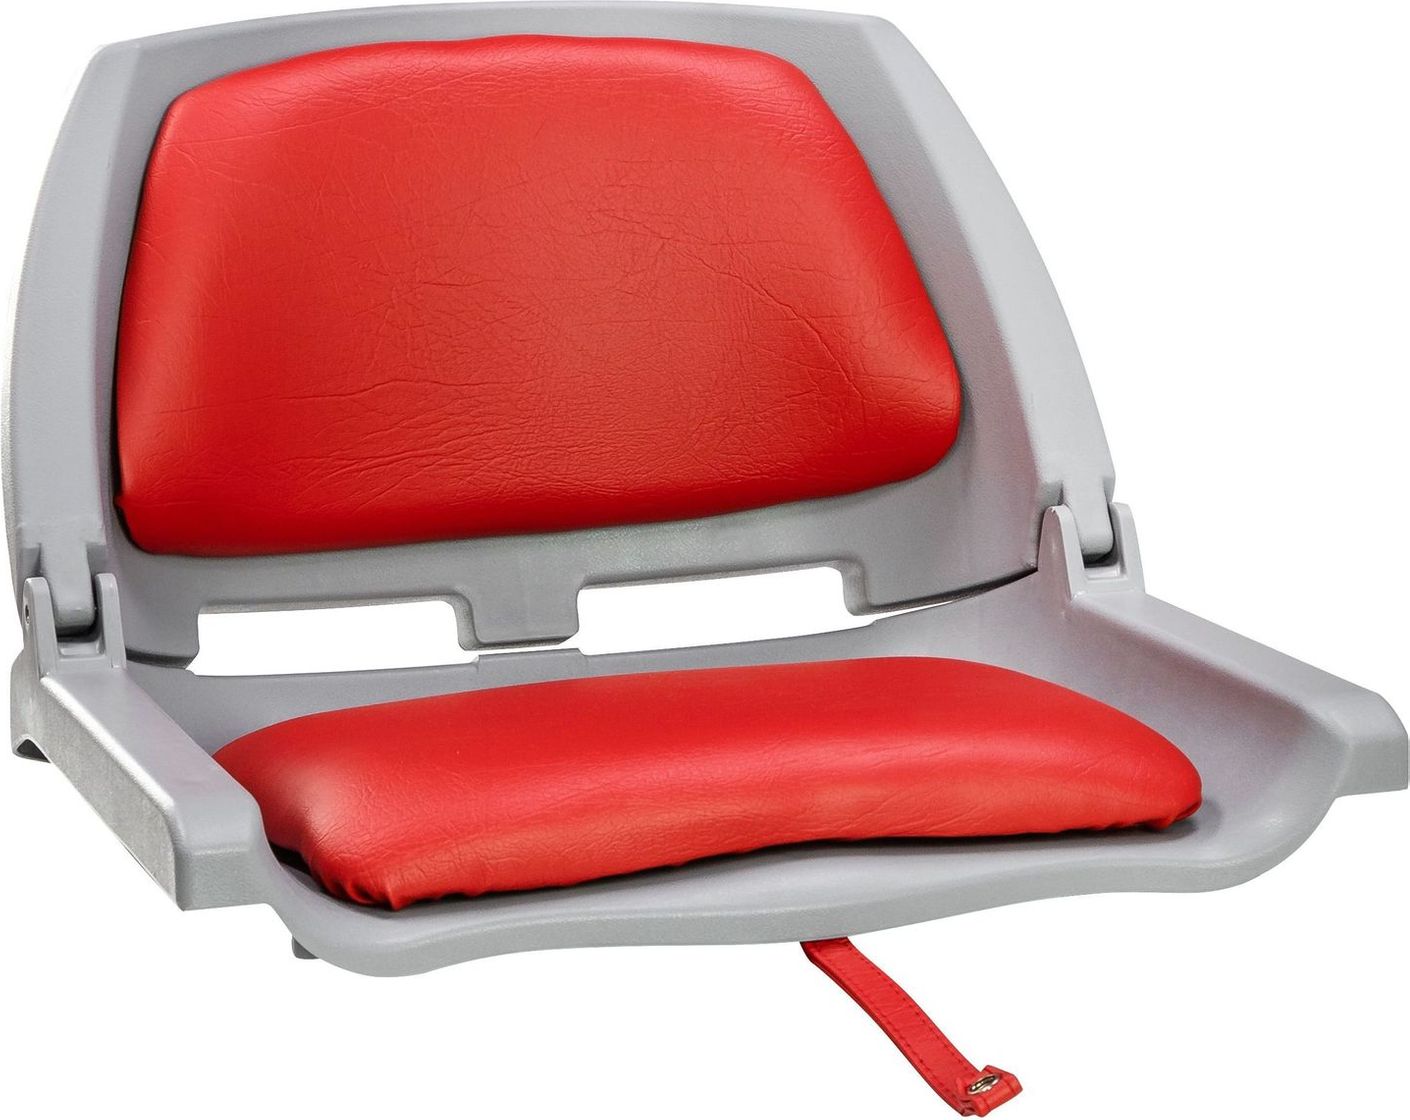 Кресло складное мягкое TRAVELER, цвет серый/красный (упаковка из 2 шт.) 1061114C_pkg_2 кресло ozark мягкое темно серый упаковка из 2 шт 1043224 pkg 2